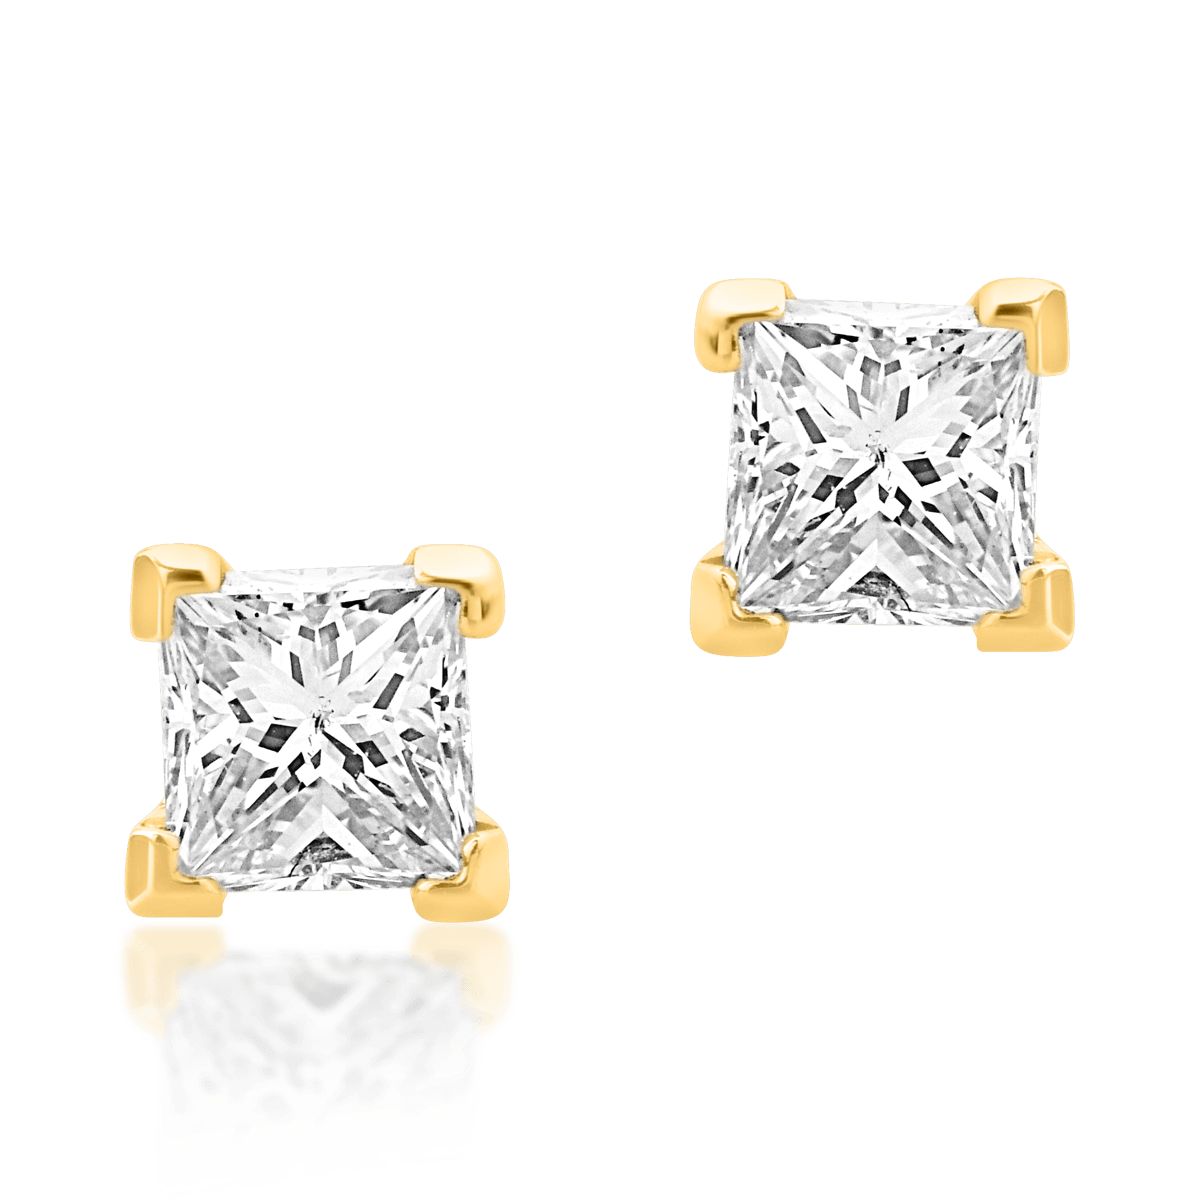 Serrated distort Tighten Cercei din aur alb de 18K cu diamante de 0.3ct - 1992 produse